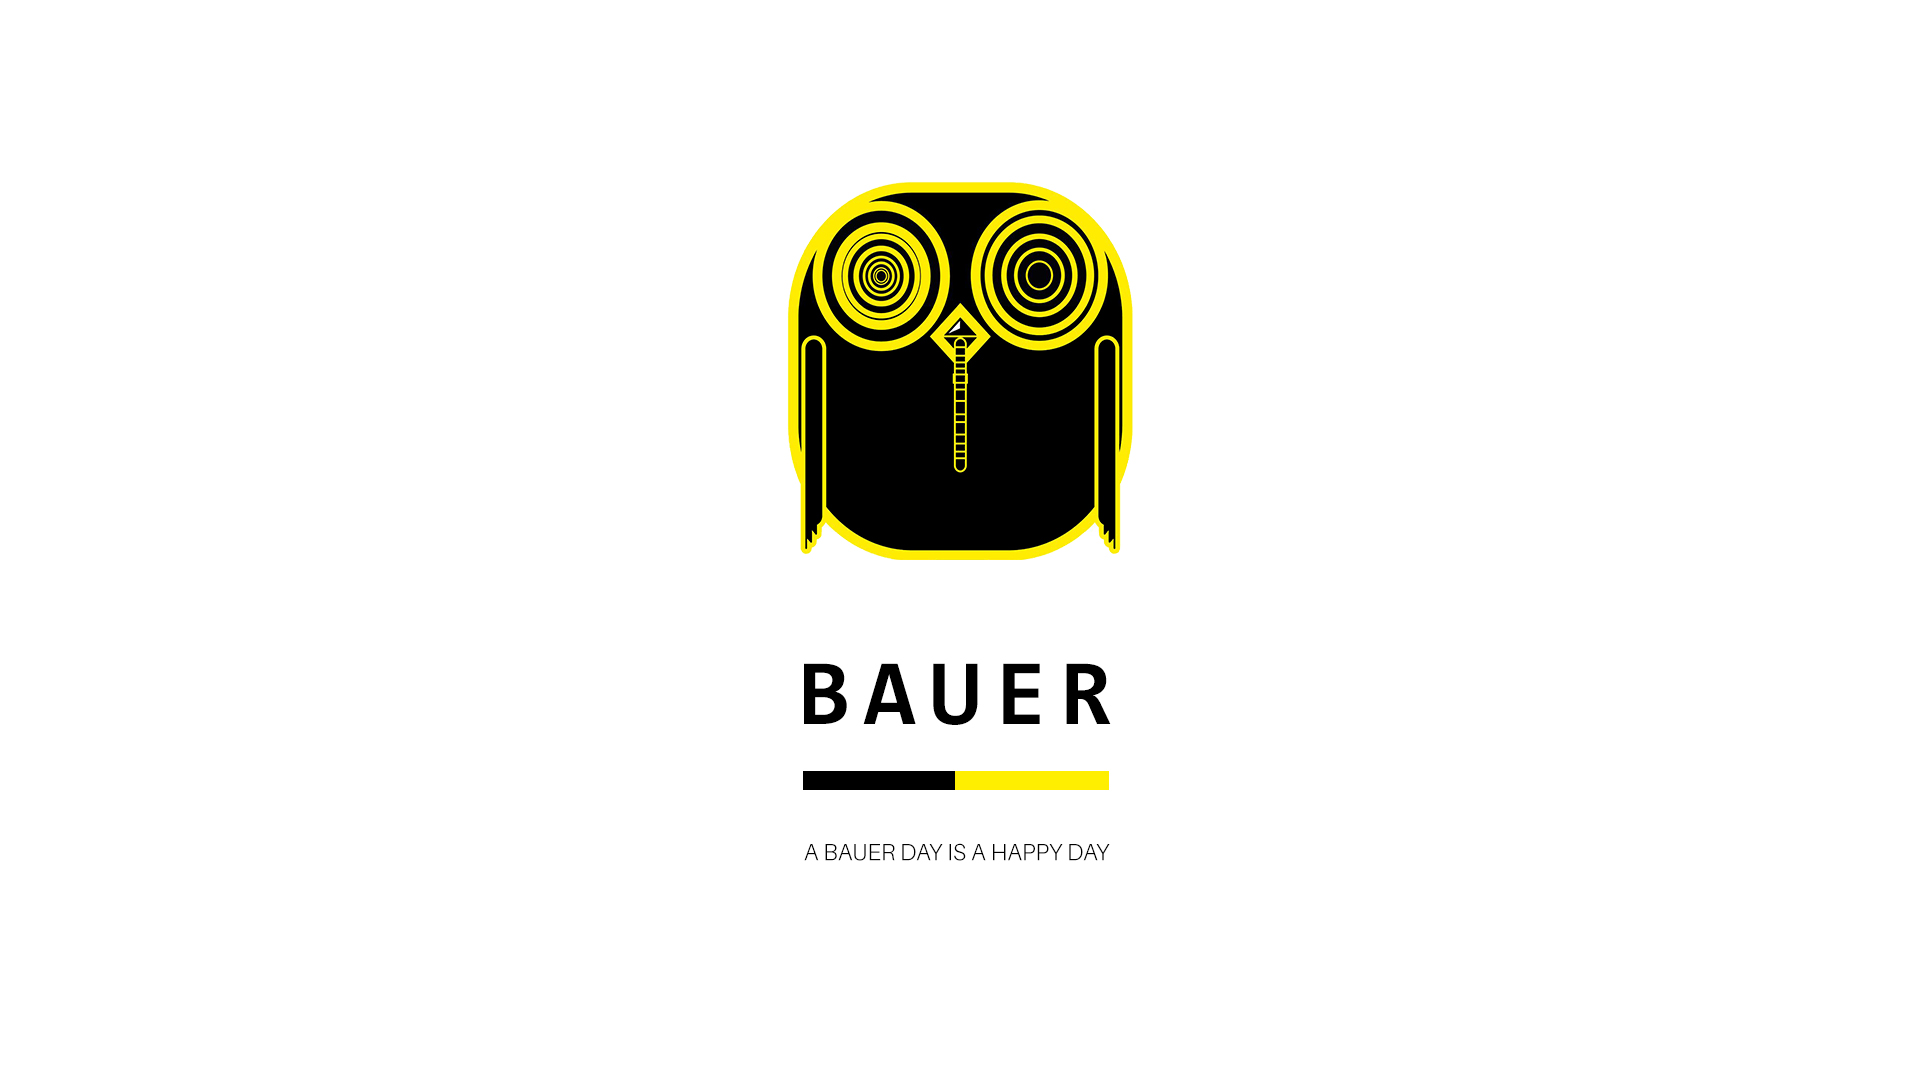 Bauer Splash Page